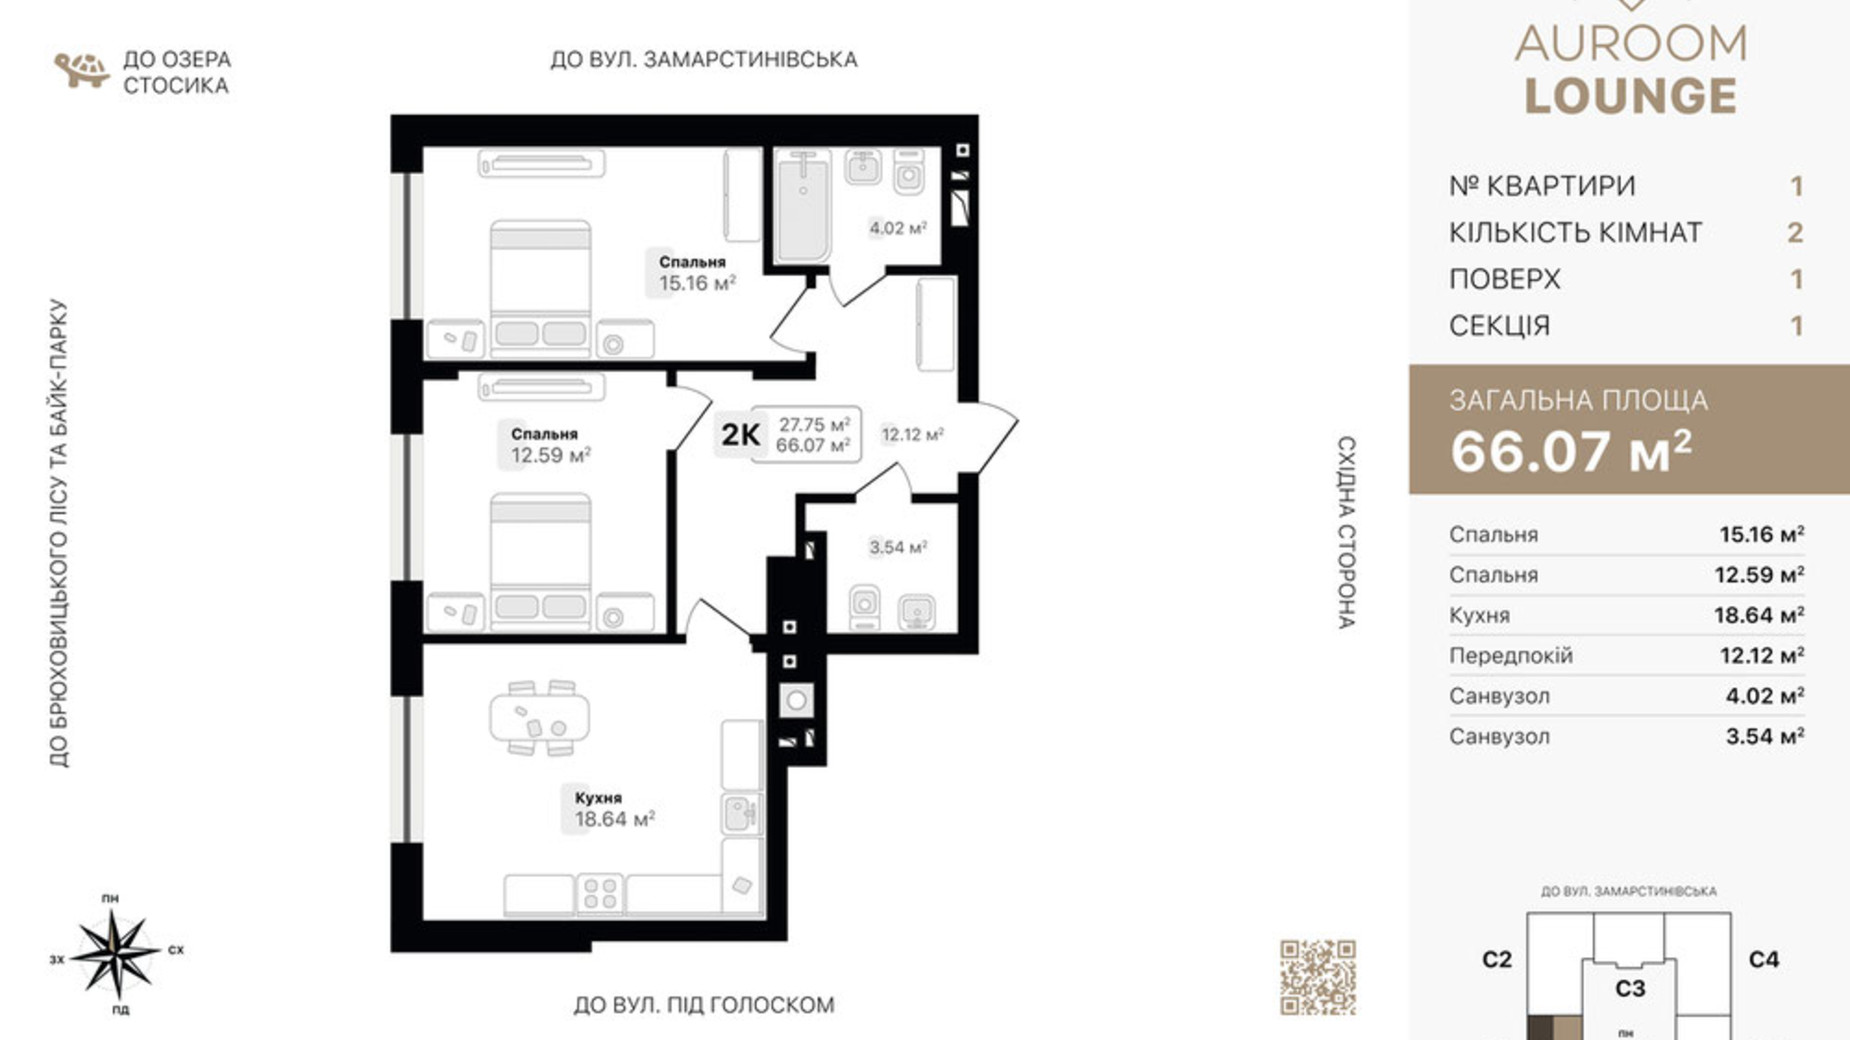 Планировка 2-комнатной квартиры в ЖК Auroom Lounge 66.07 м², фото 720780